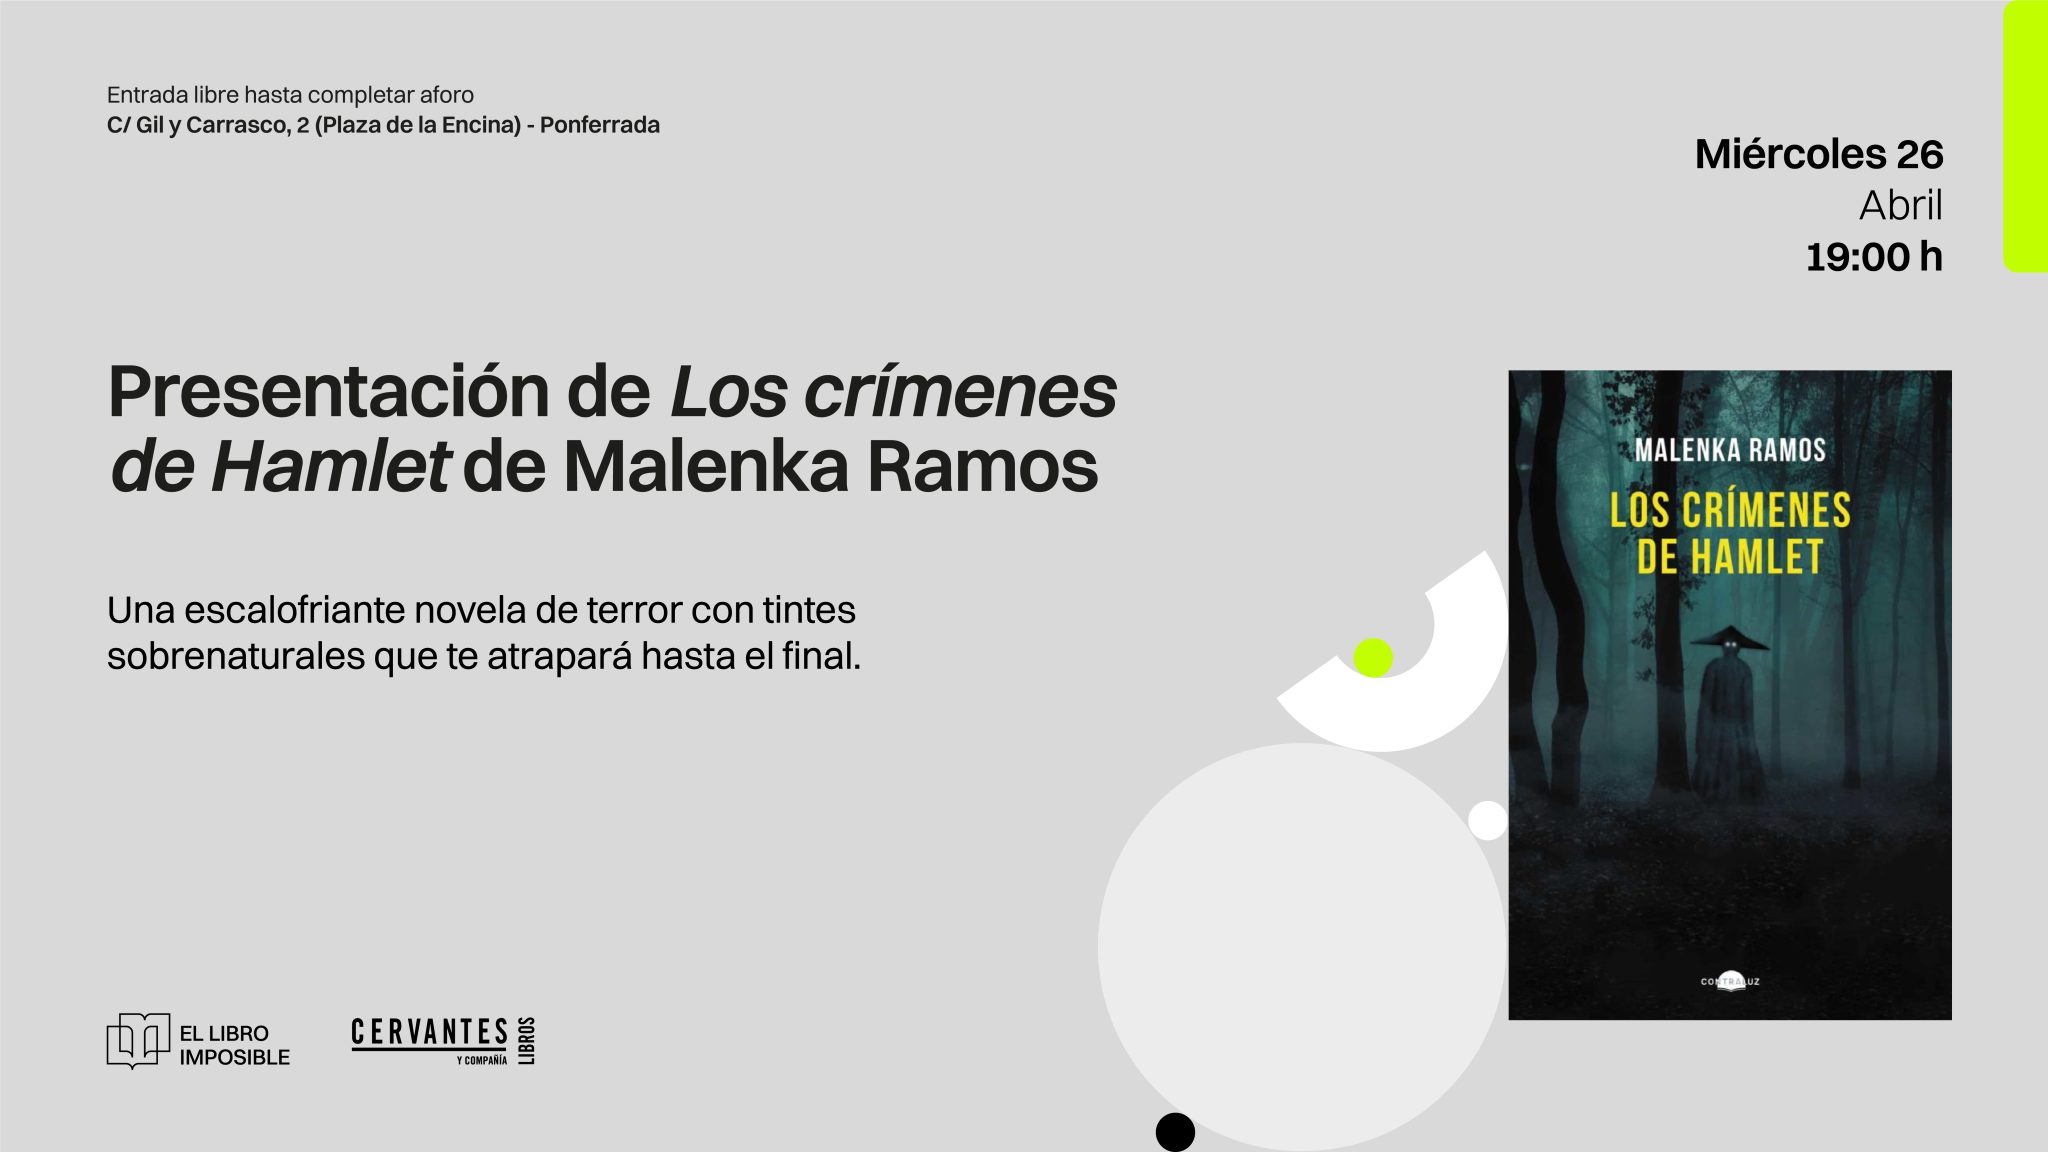 yeso compuesto al límite La Autora Malenka Ramos Presenta Su Novela 'Los Crímenes De Hamlet' En El  Libro Imposible El Miércoles 26 De Abril A Las 19h - PonferradaHoy